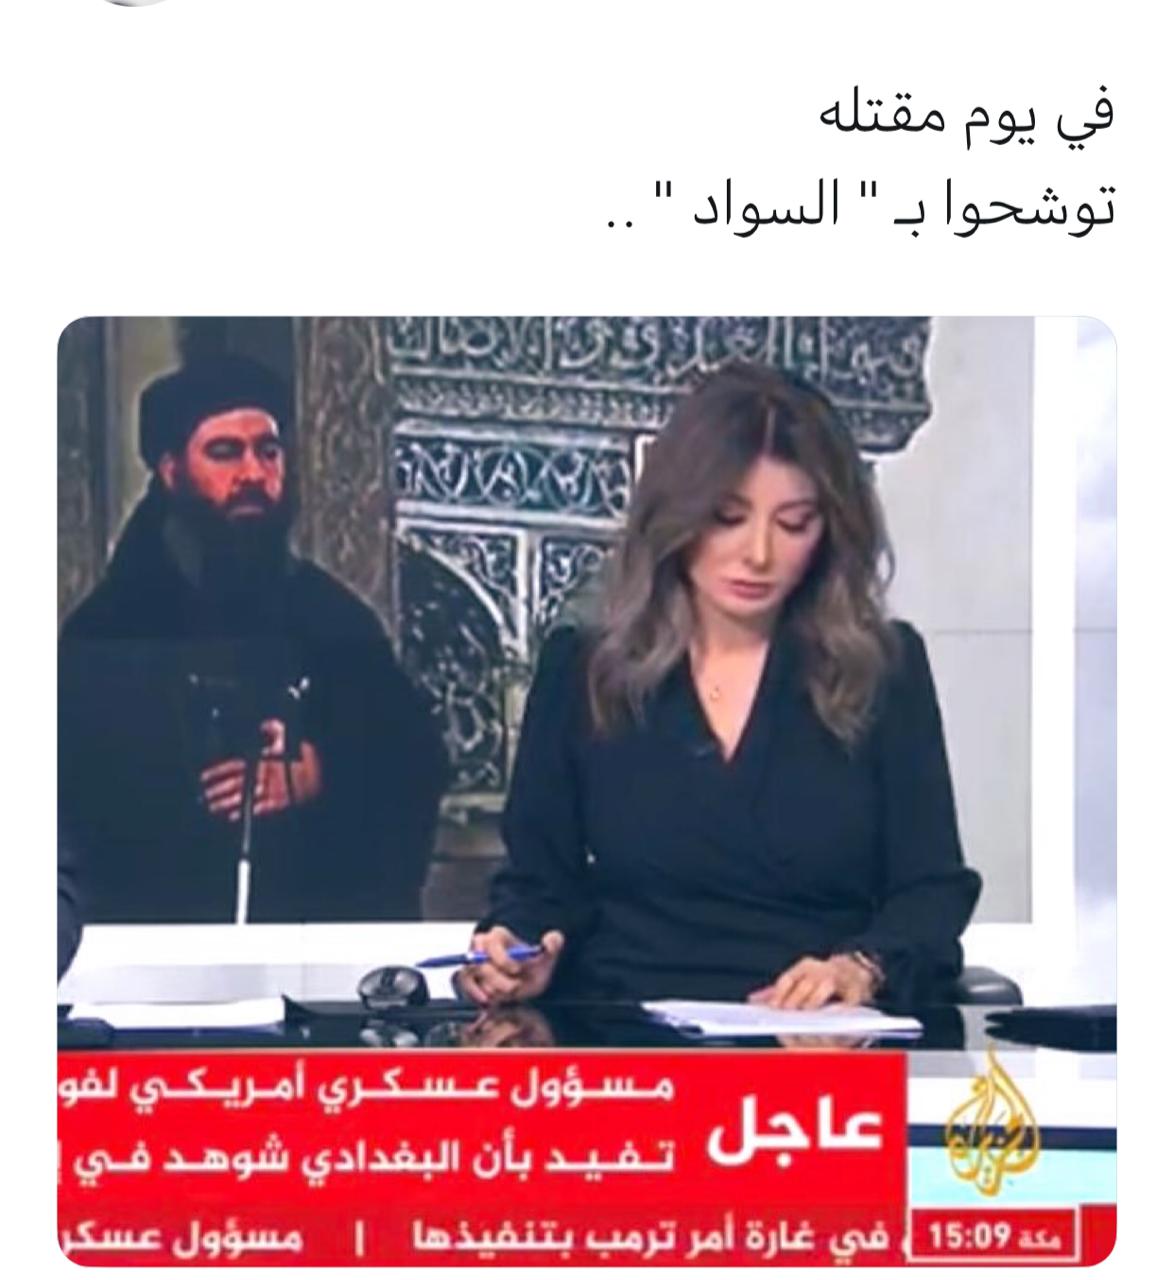 قناة #الجزيرة في يوم مقتل #البغدادي توشحوا بالأسود